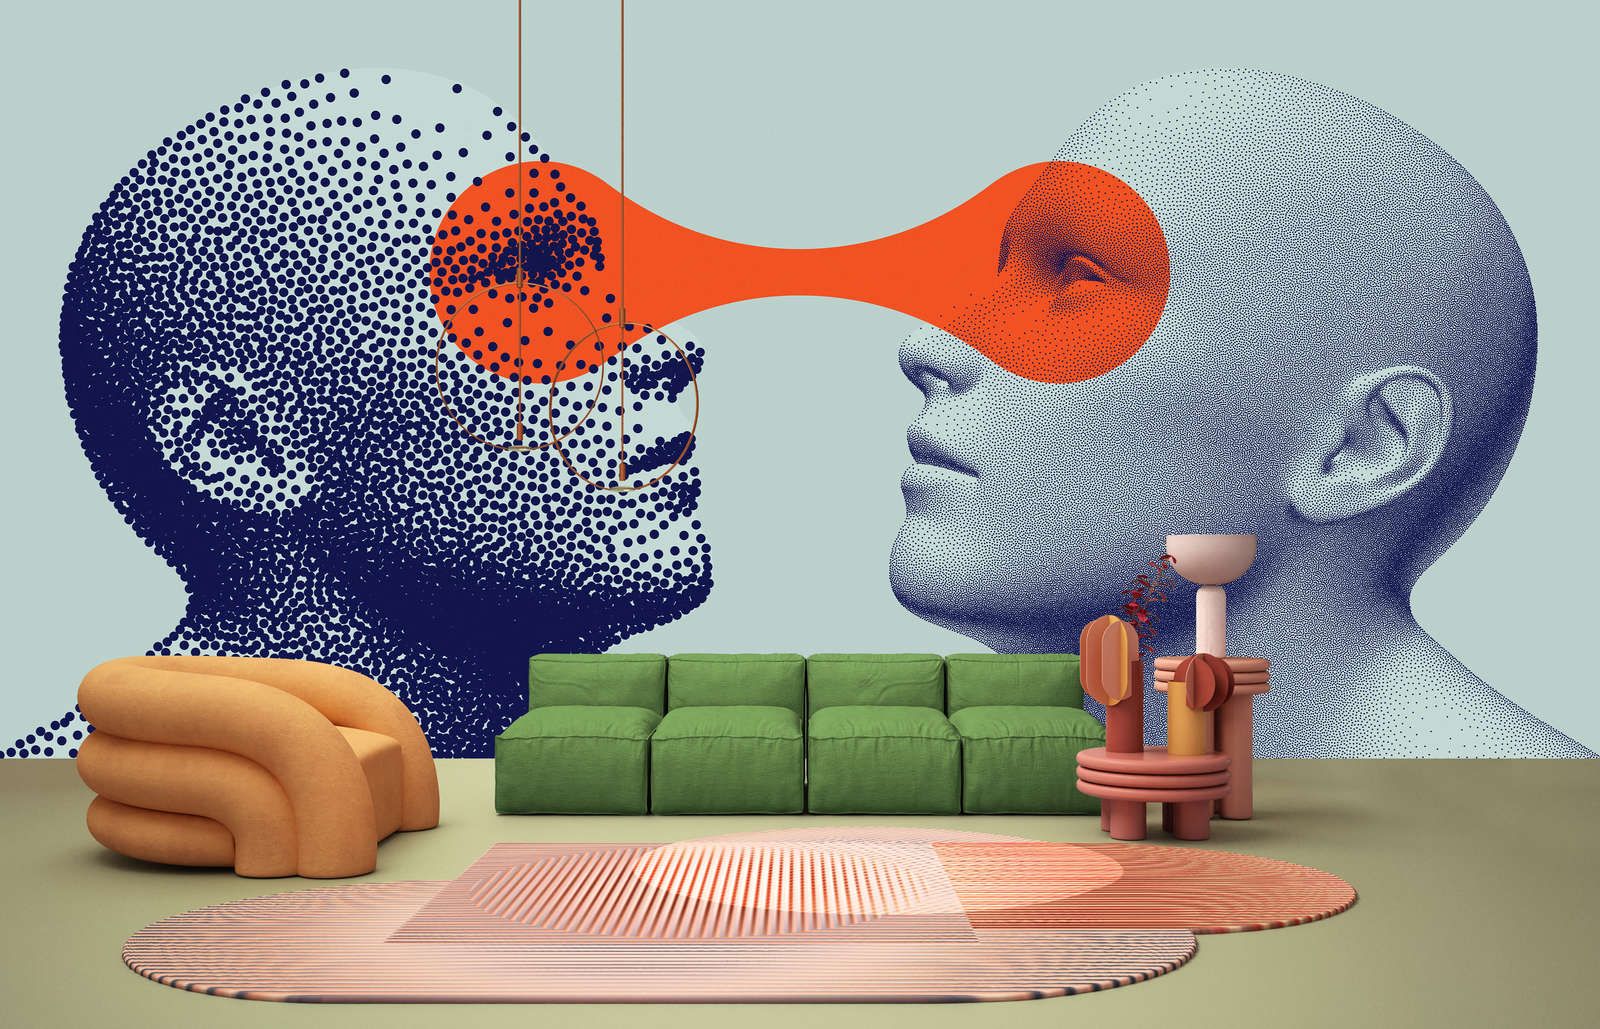             Fototapete »think tank« - Futuristisches Dot-Design mit zwei Personen – Glattes, leicht glänzendes Premiumvlies
        